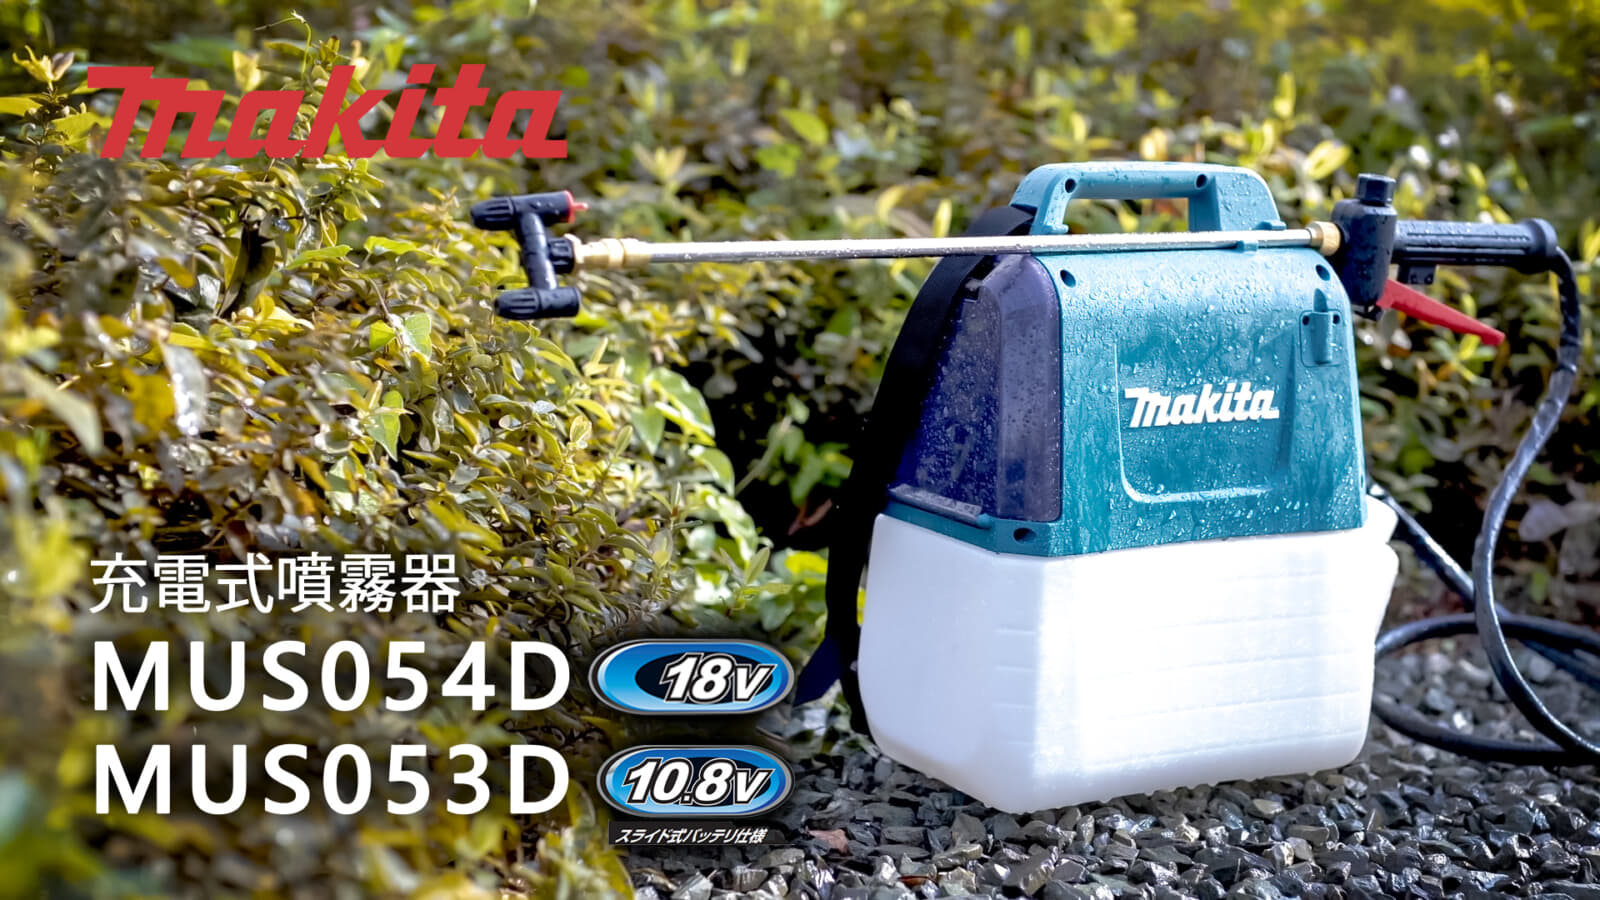 マキタ MUS054D/MUS053D 充電式噴霧器を発売、軽量・コンパクトな